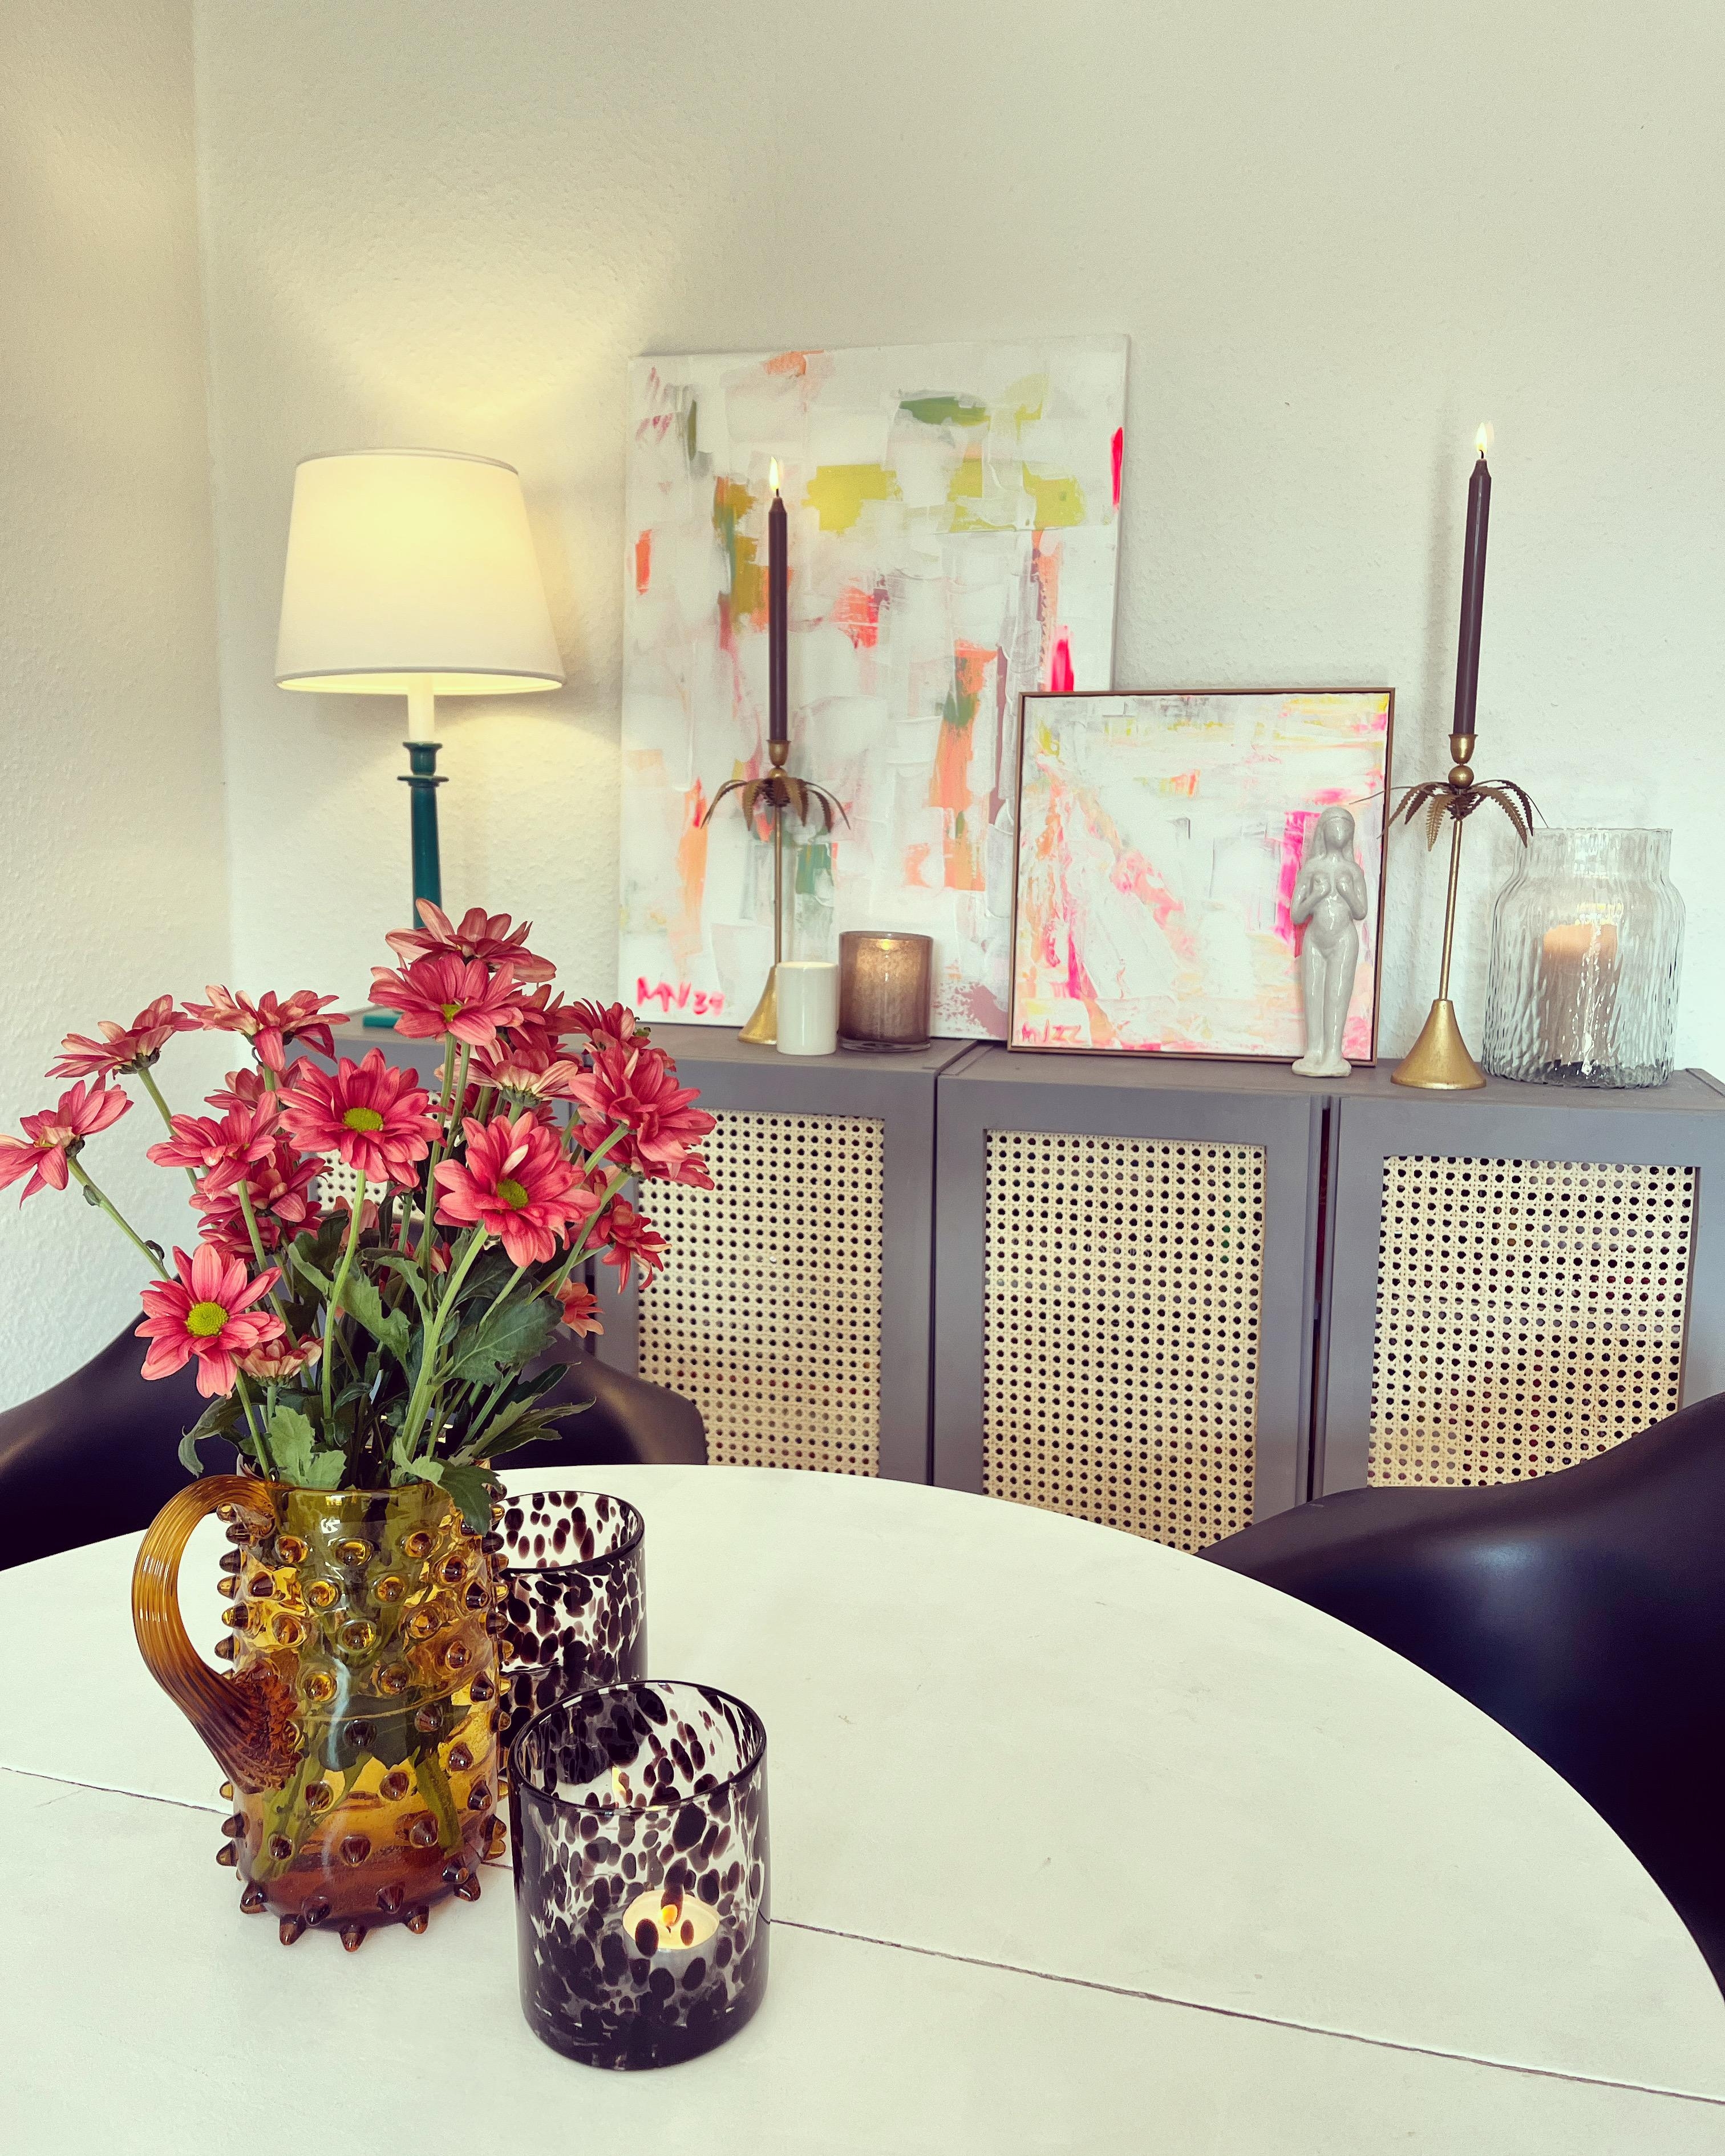 Esstisch mit Kunst und Blumen  #livingroom #kunst